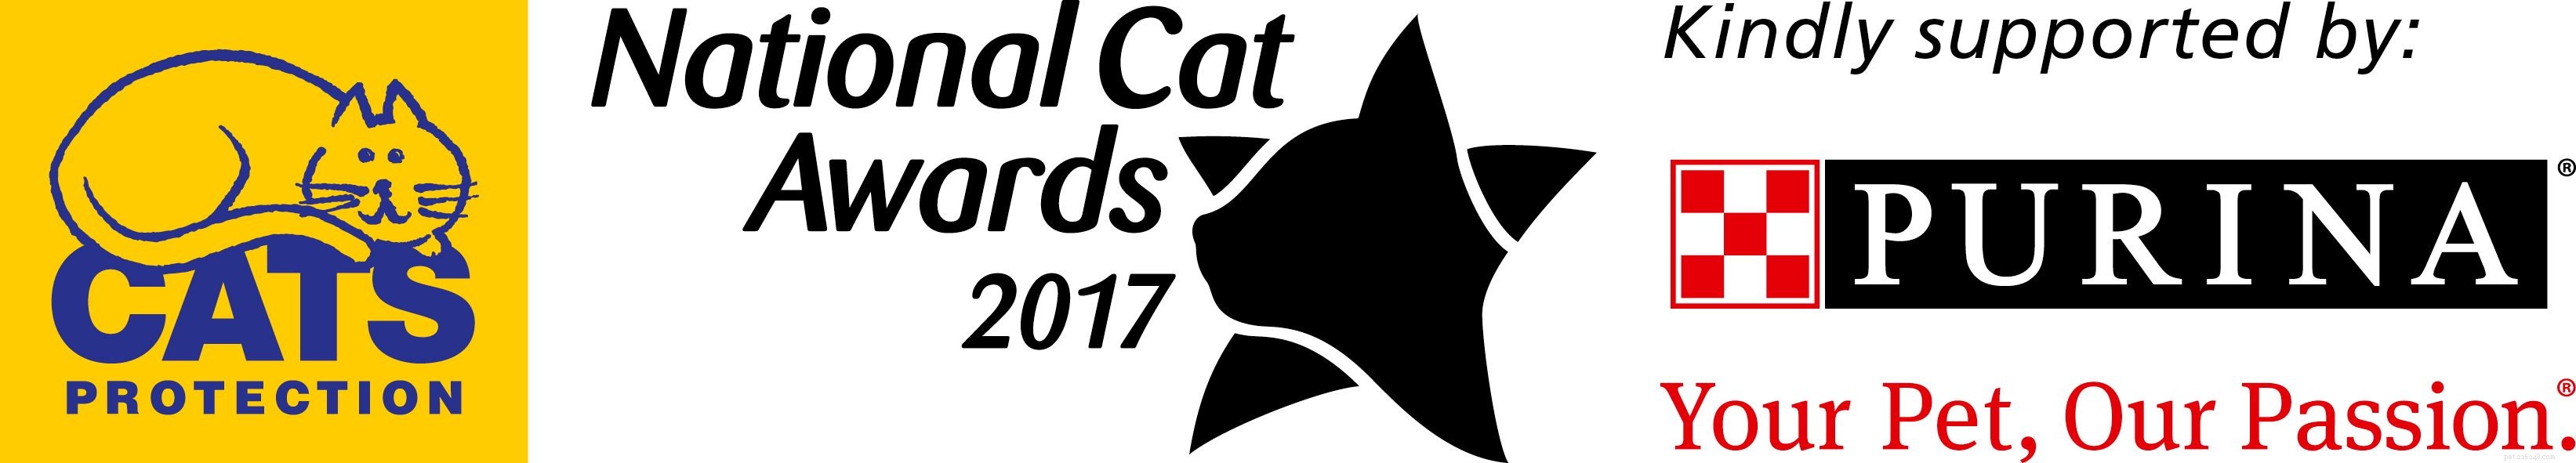 Maak kennis met de finalisten van de categorie Most Caring Cat in de National Cat Awards 2017!